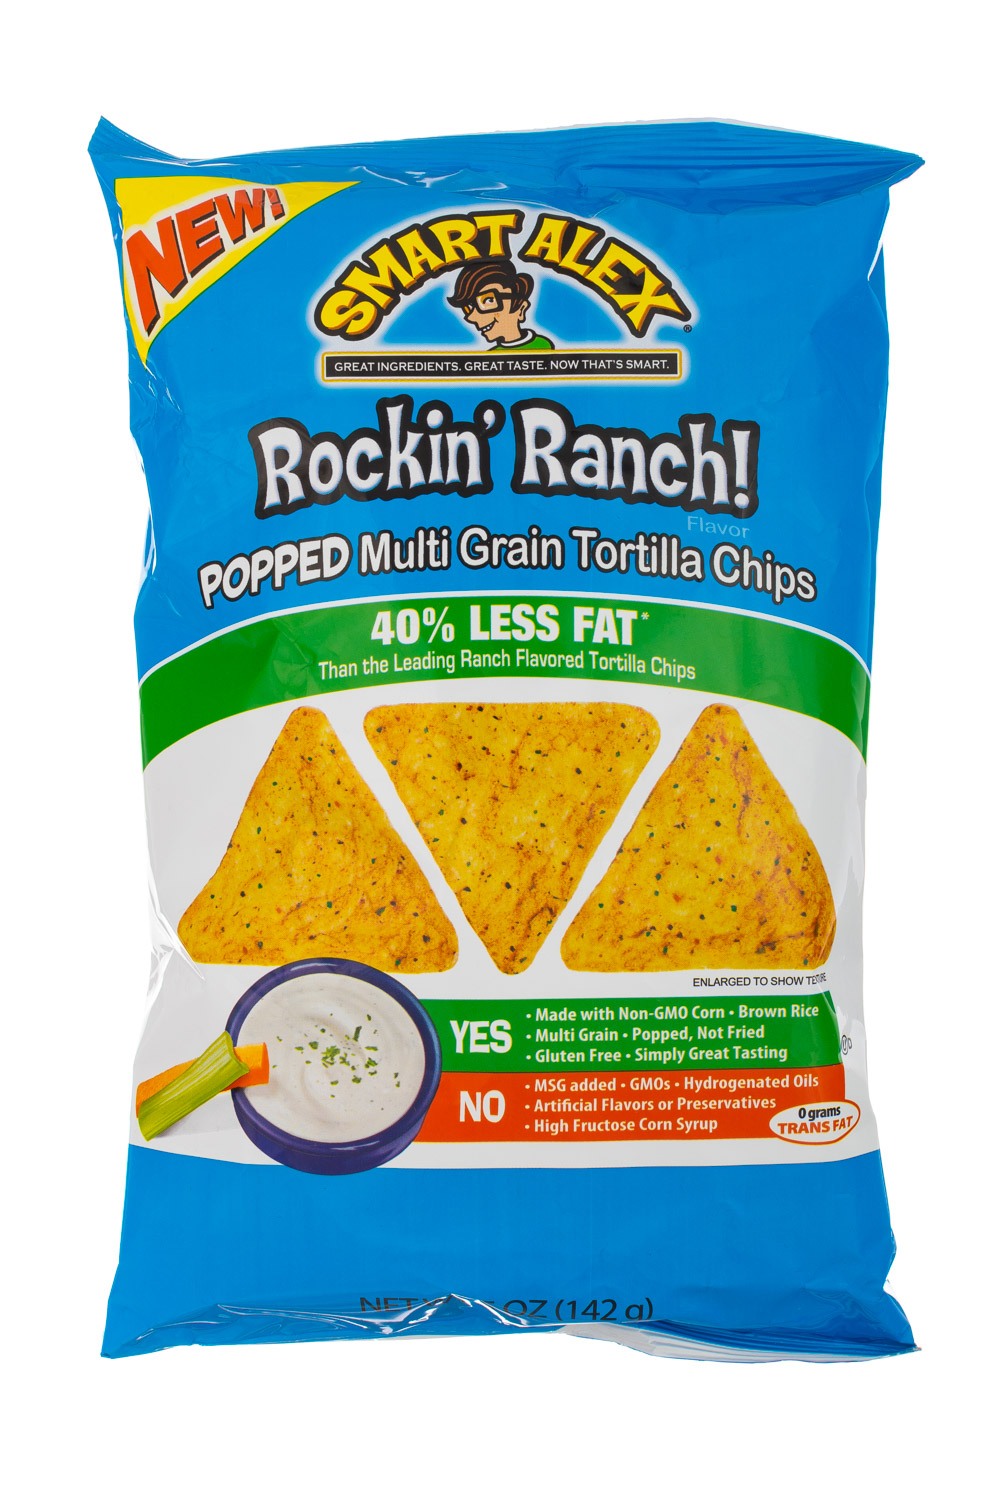 Rockin' Ranch!